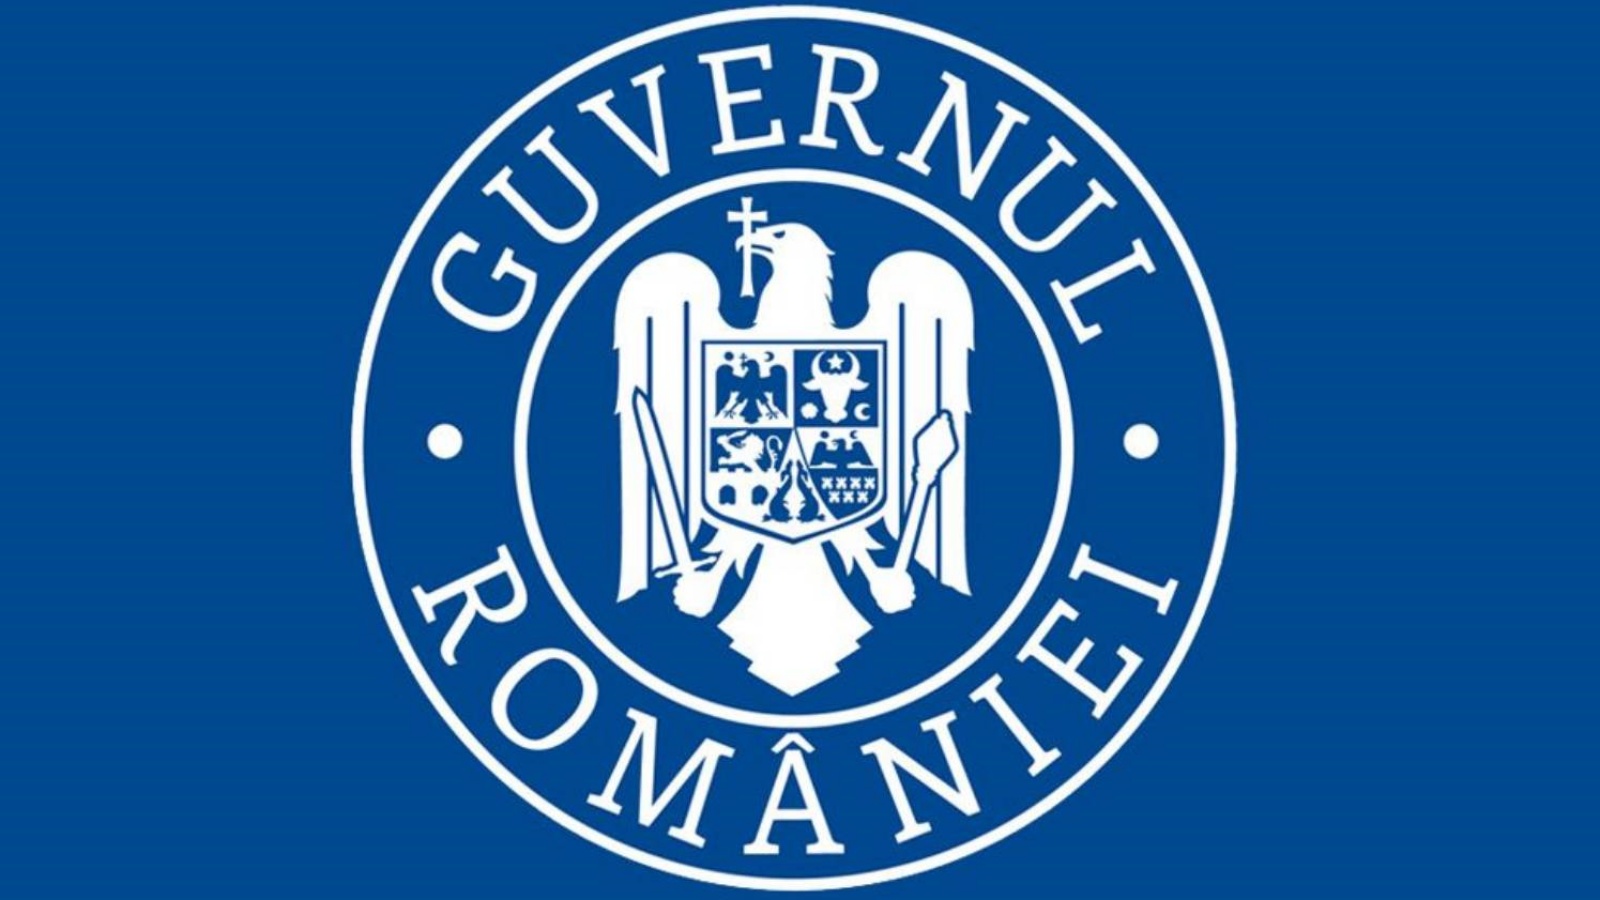 Misure di emergenza adottate dal governo rumeno a causa del coronavirus